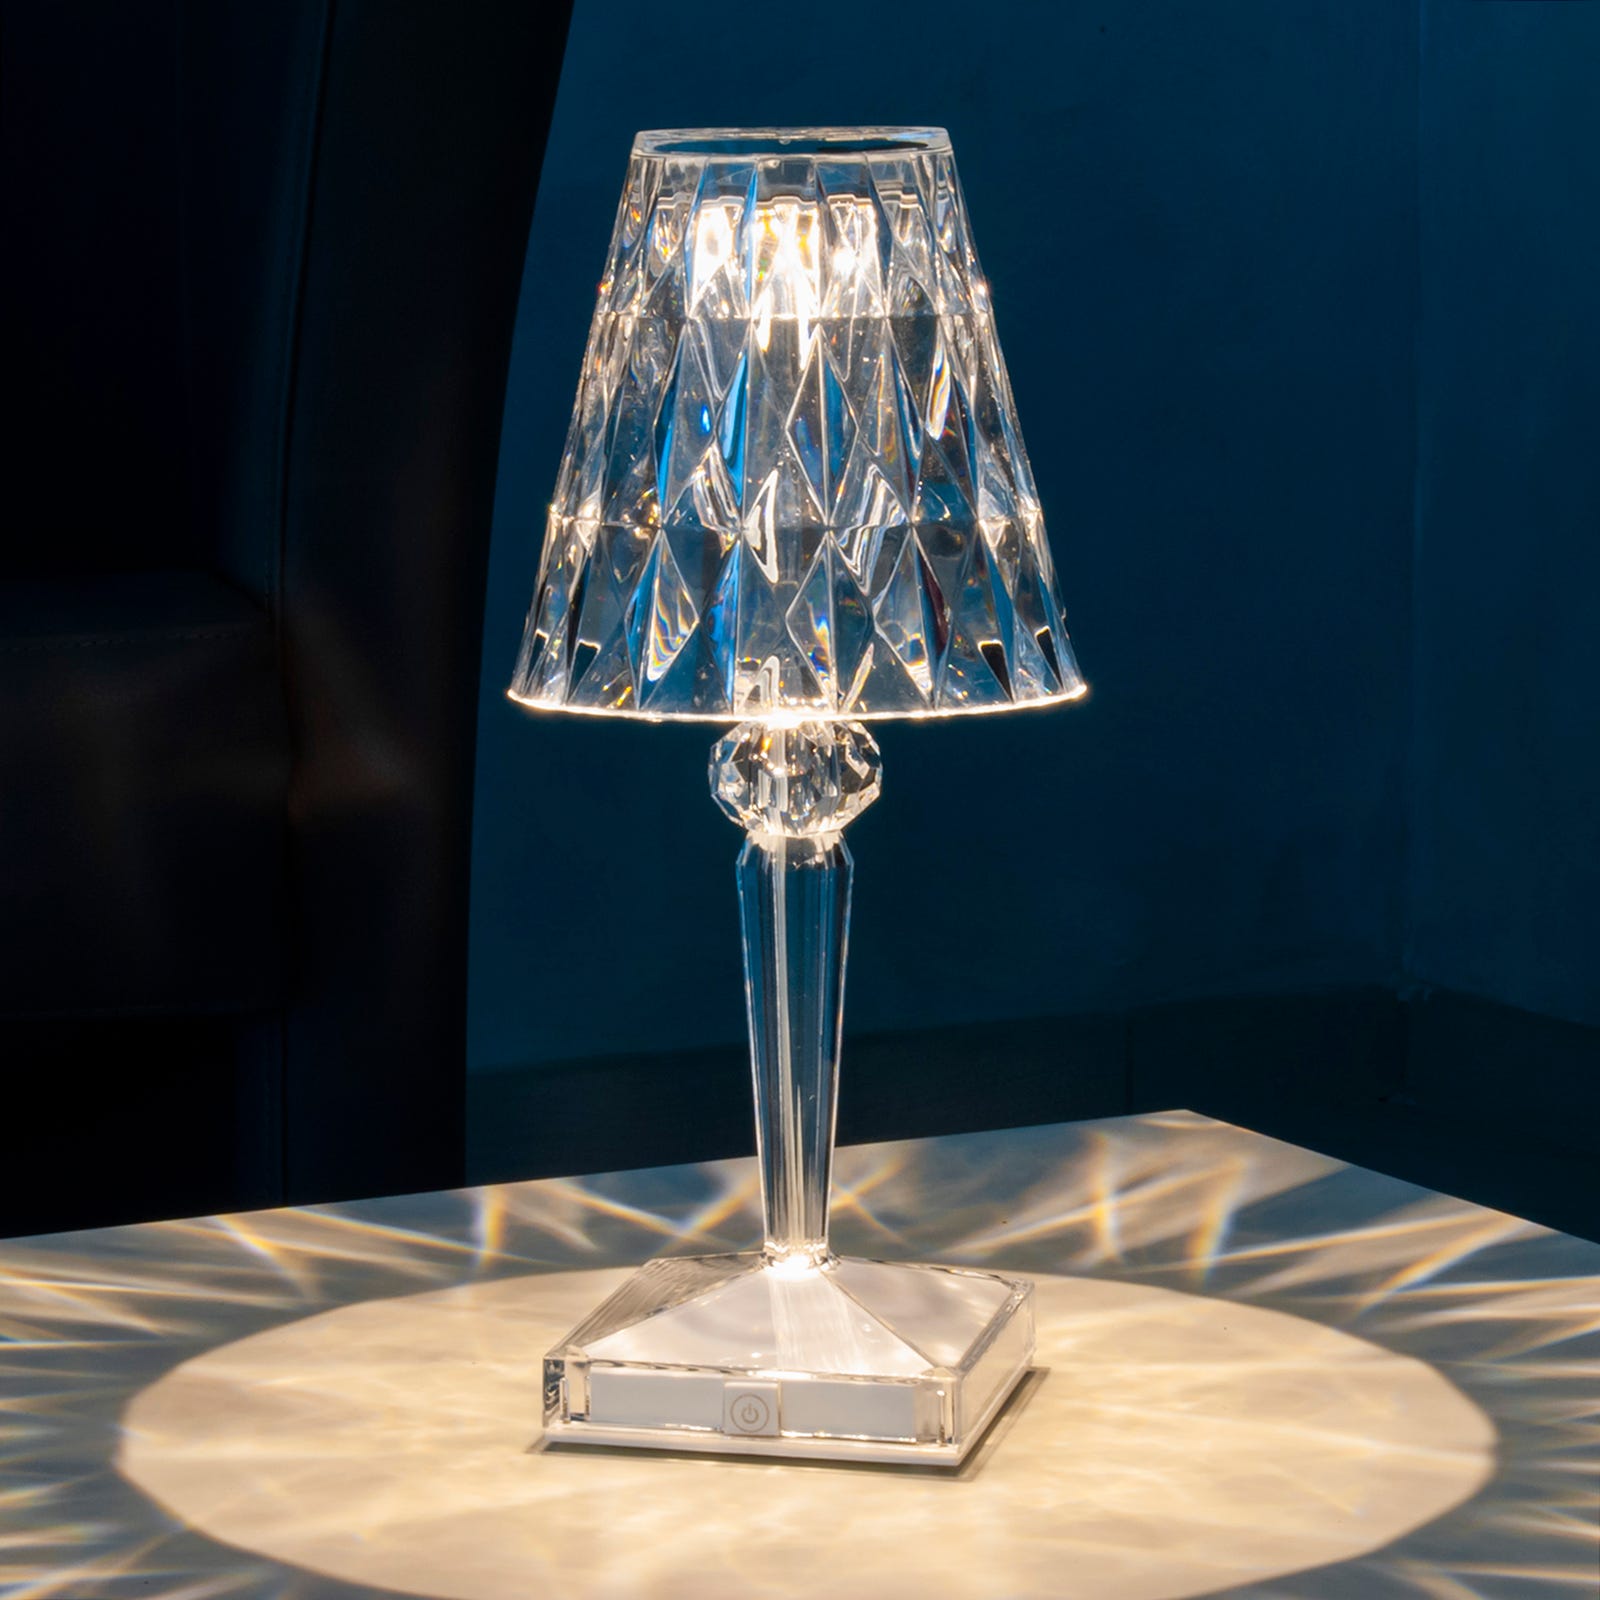 Lampada tavolo Ricaricabile cristallo forma diamante luce LED touch USB  decorazione camera letto soggiorno ristorante pub 3000K